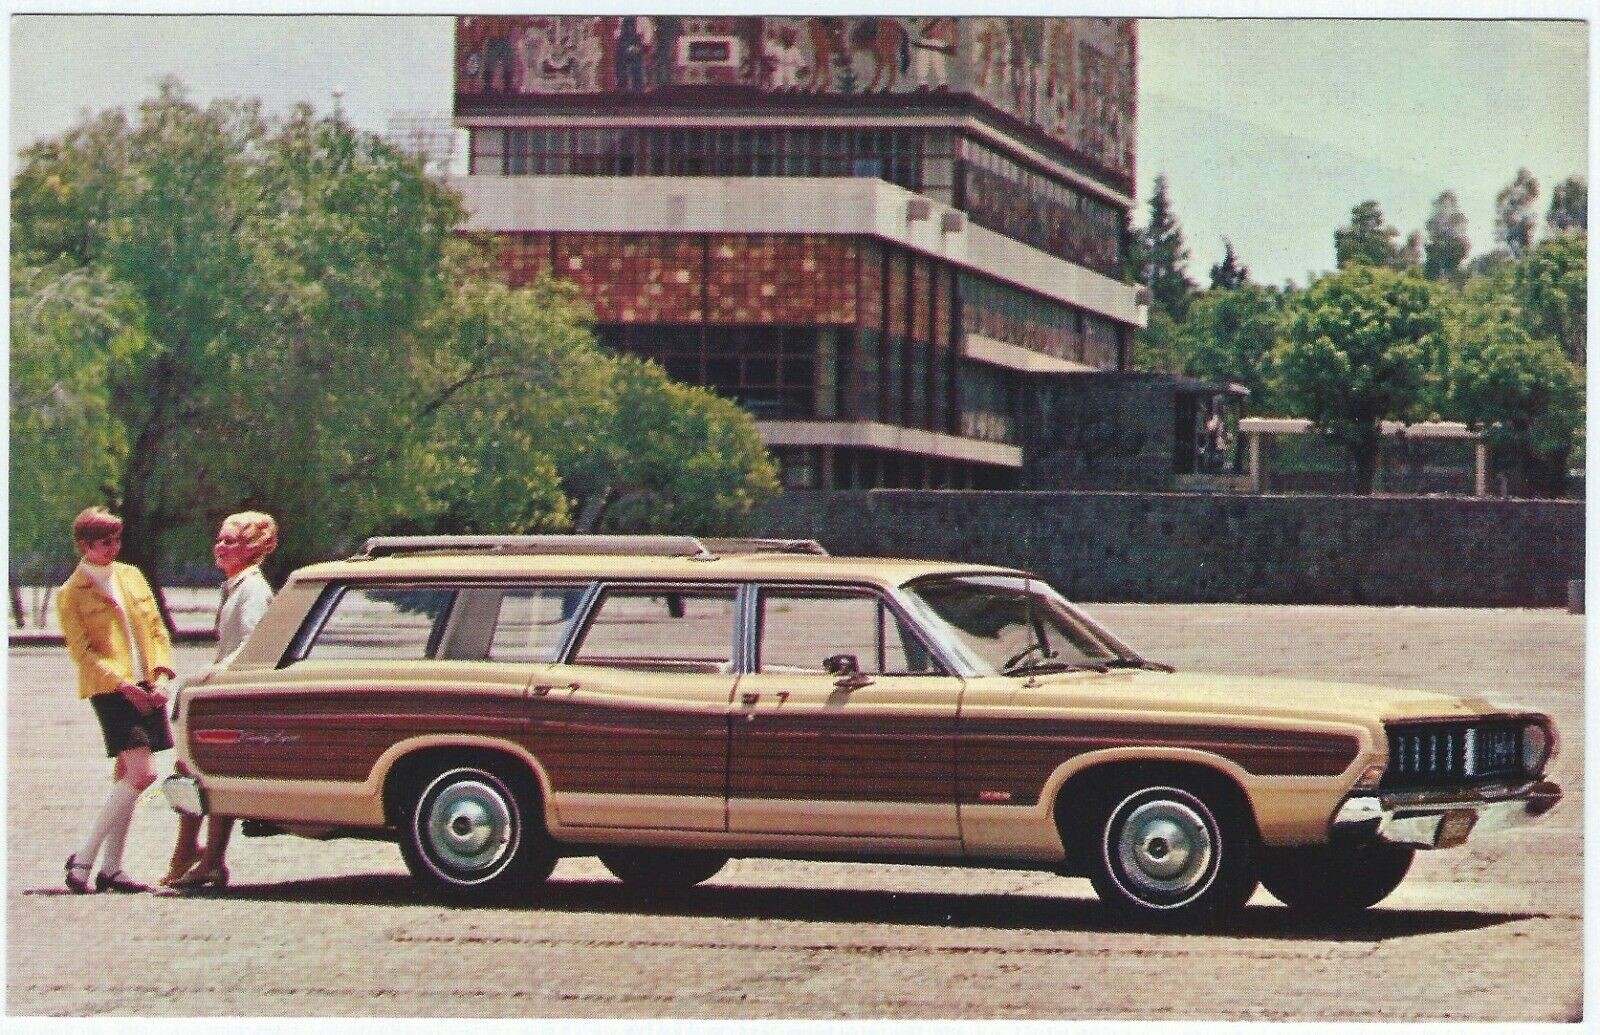 Универсал Ford Country Squire 1968 года, который вмещает десять человек